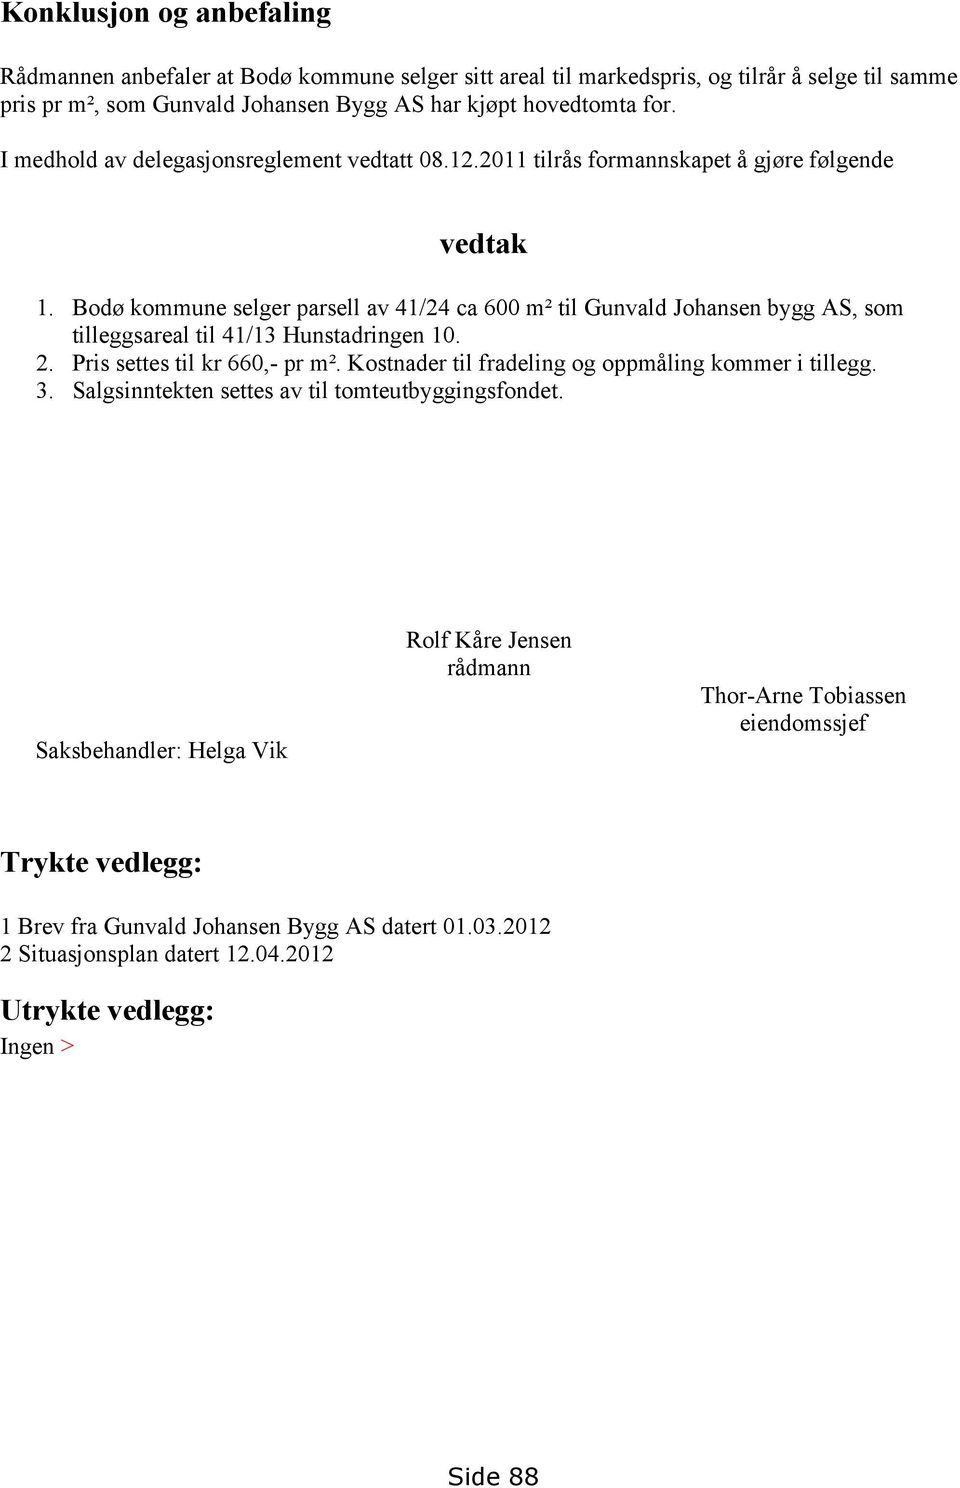 Bodø kommune selger parsell av 41/24 ca 600 m² til Gunvald Johansen bygg AS, som tilleggsareal til 41/13 Hunstadringen 10. 2. Pris settes til kr 660,- pr m².